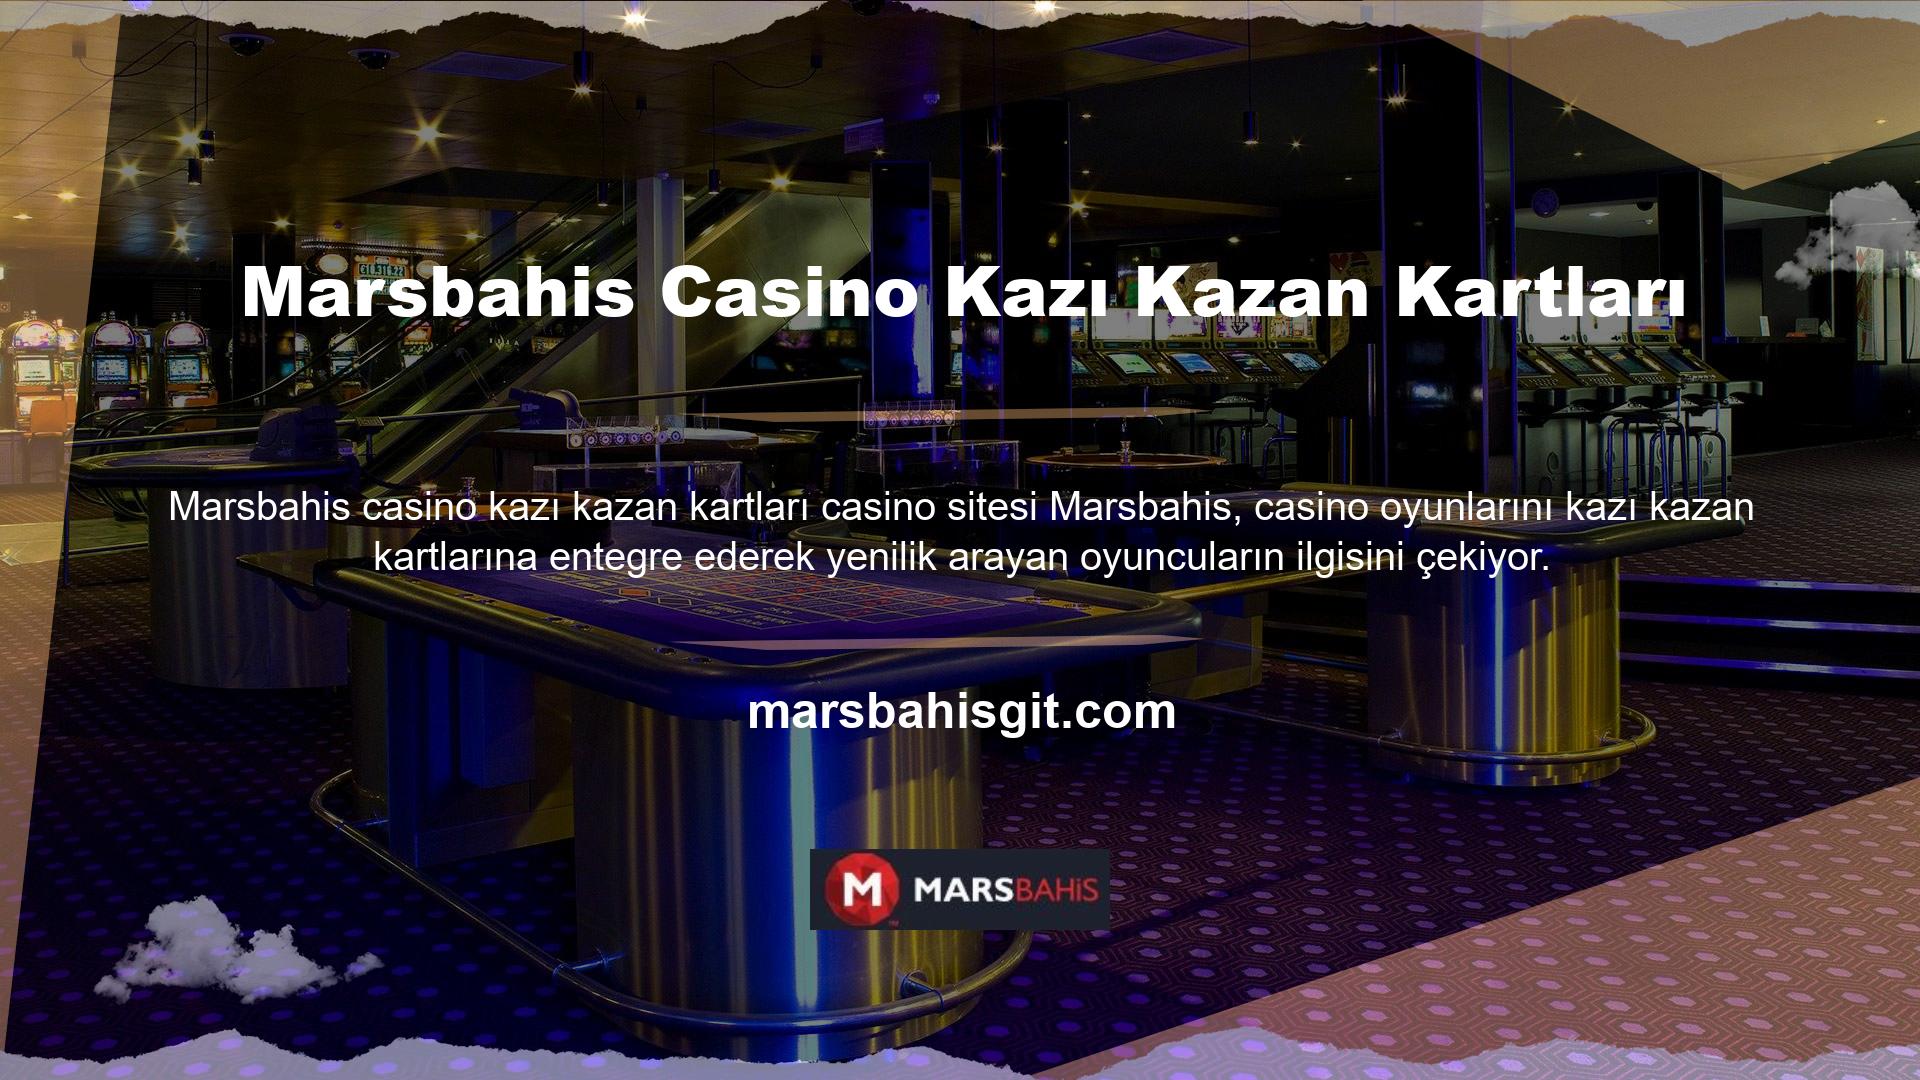 Marsbahis Casino'da yüksek kazanma oranlarına sahip 30 çeşit kazı kazan oyunu bulunmaktadır